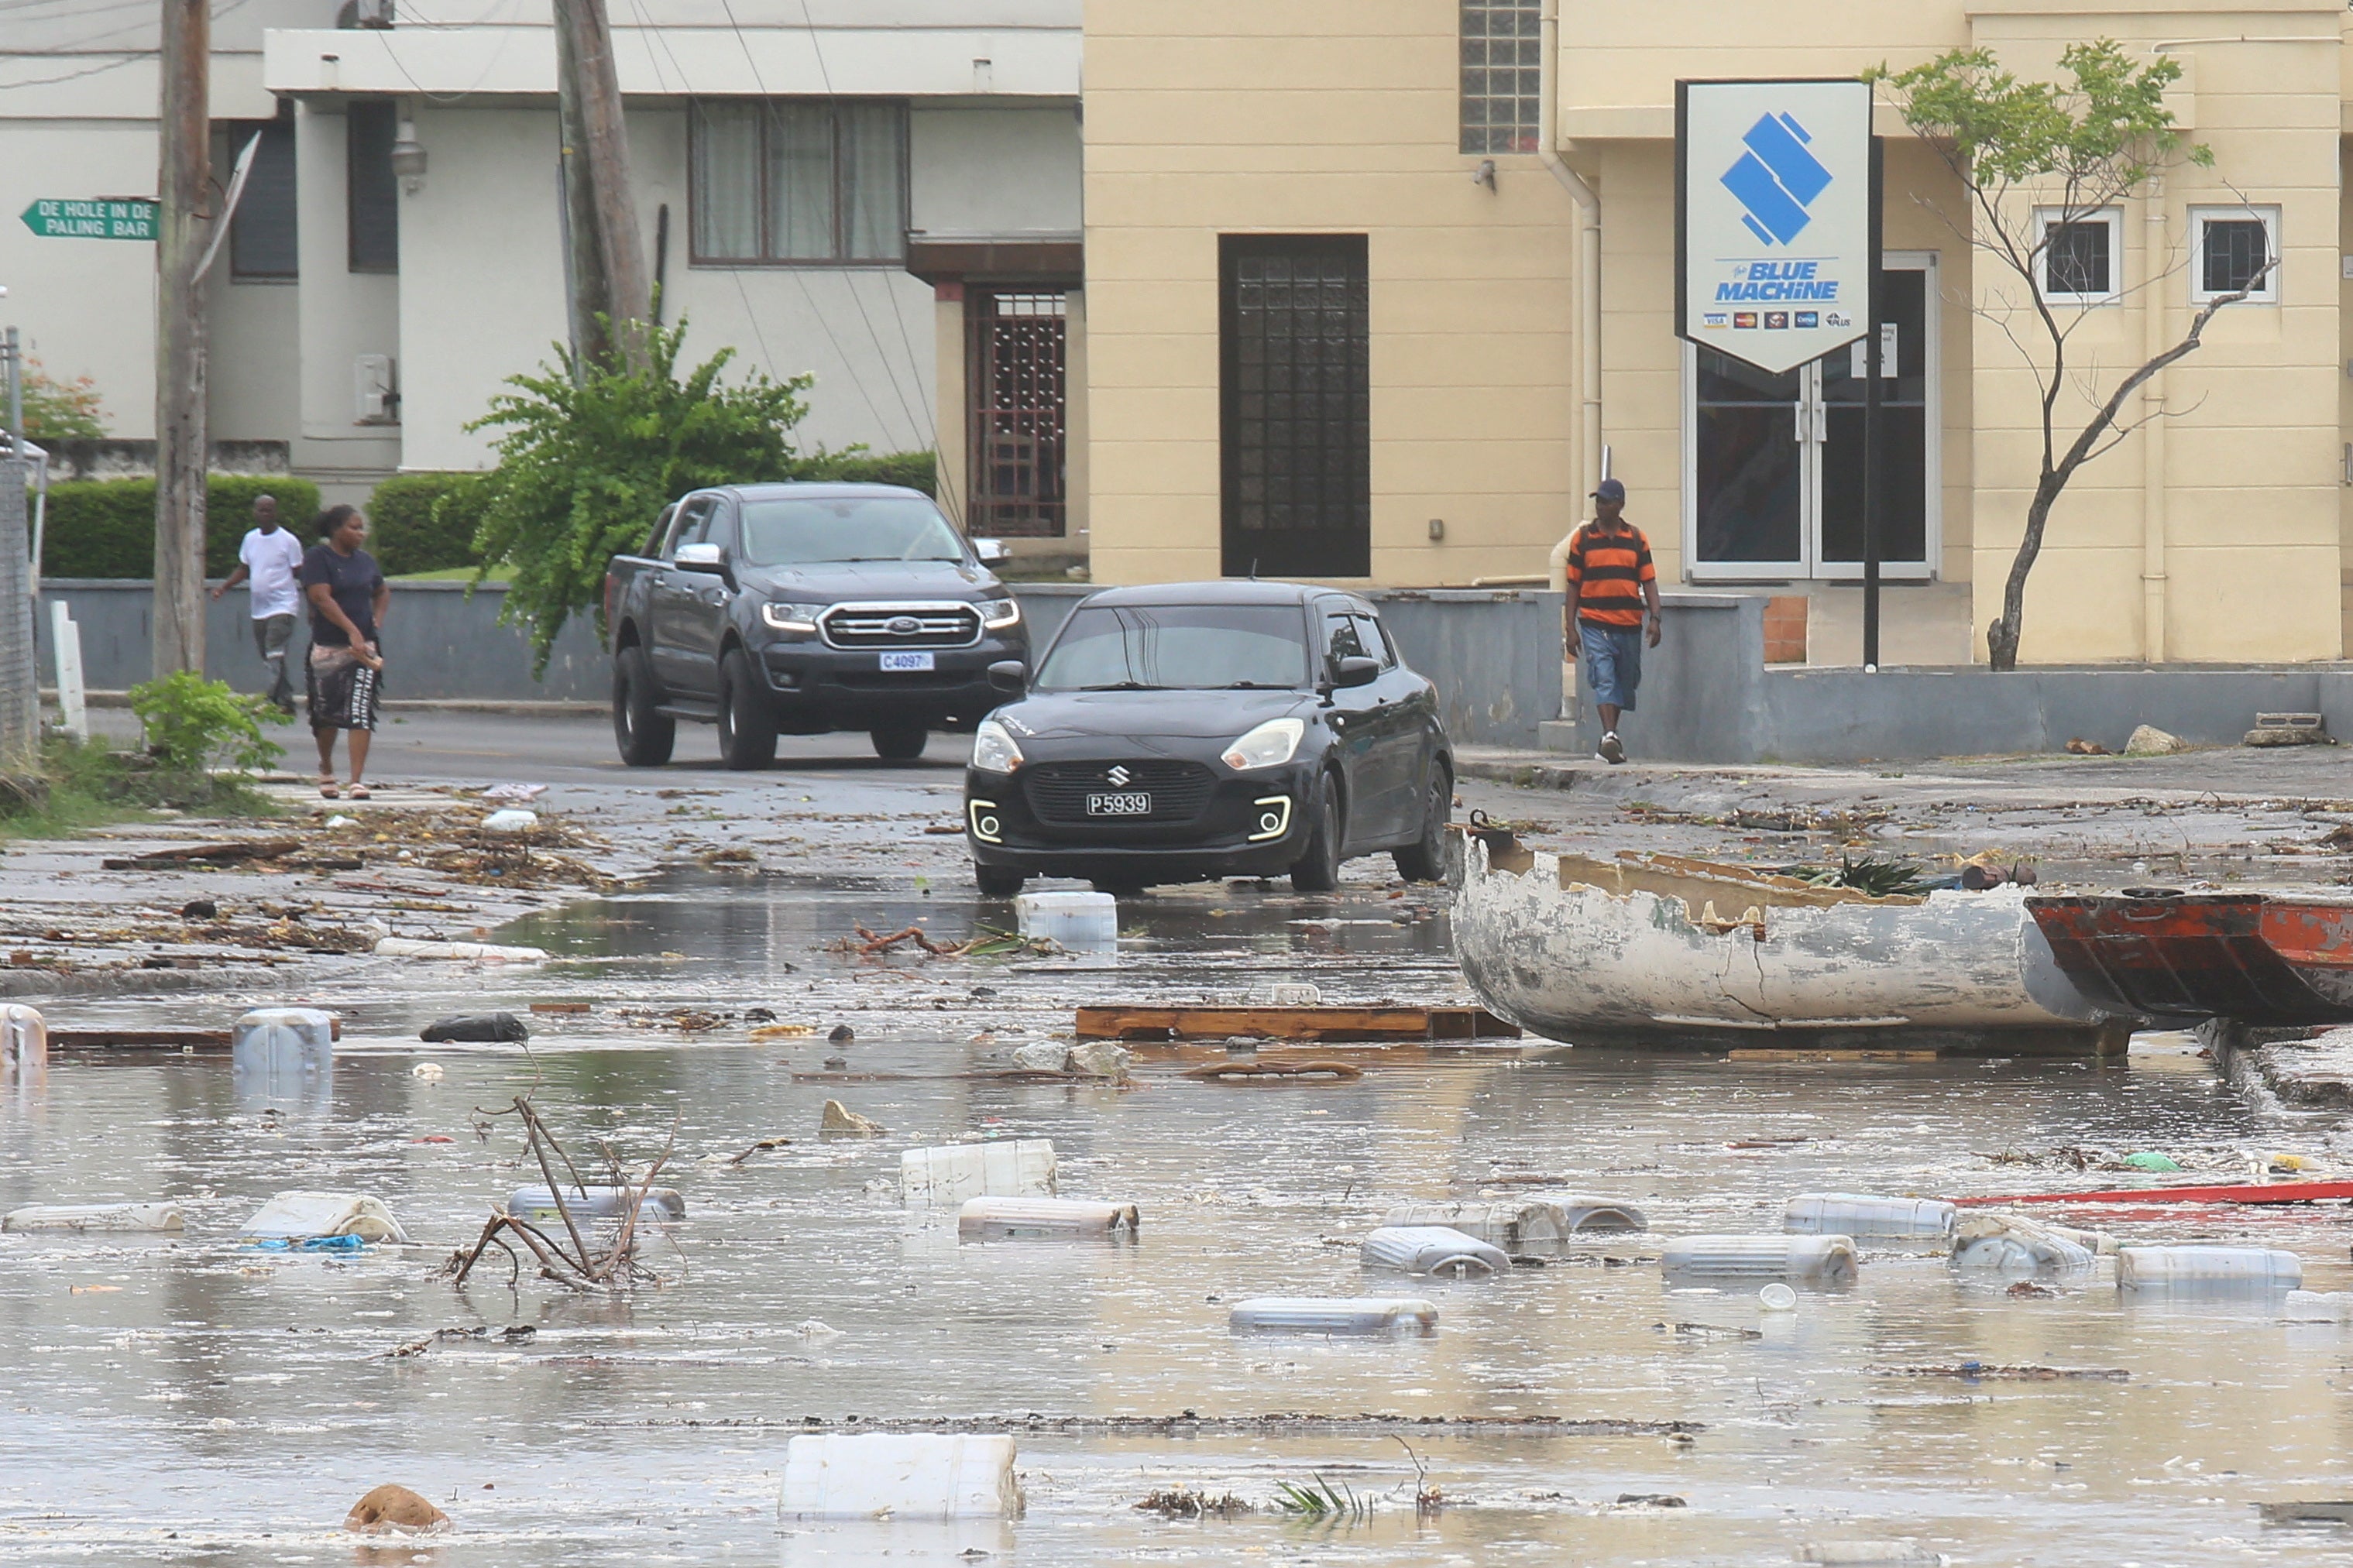 سيارات تسير في شارع مليء بالحطام في بريدجتاون، بربادوس، بعد أن ضرب إعصار بريل الجزيرة